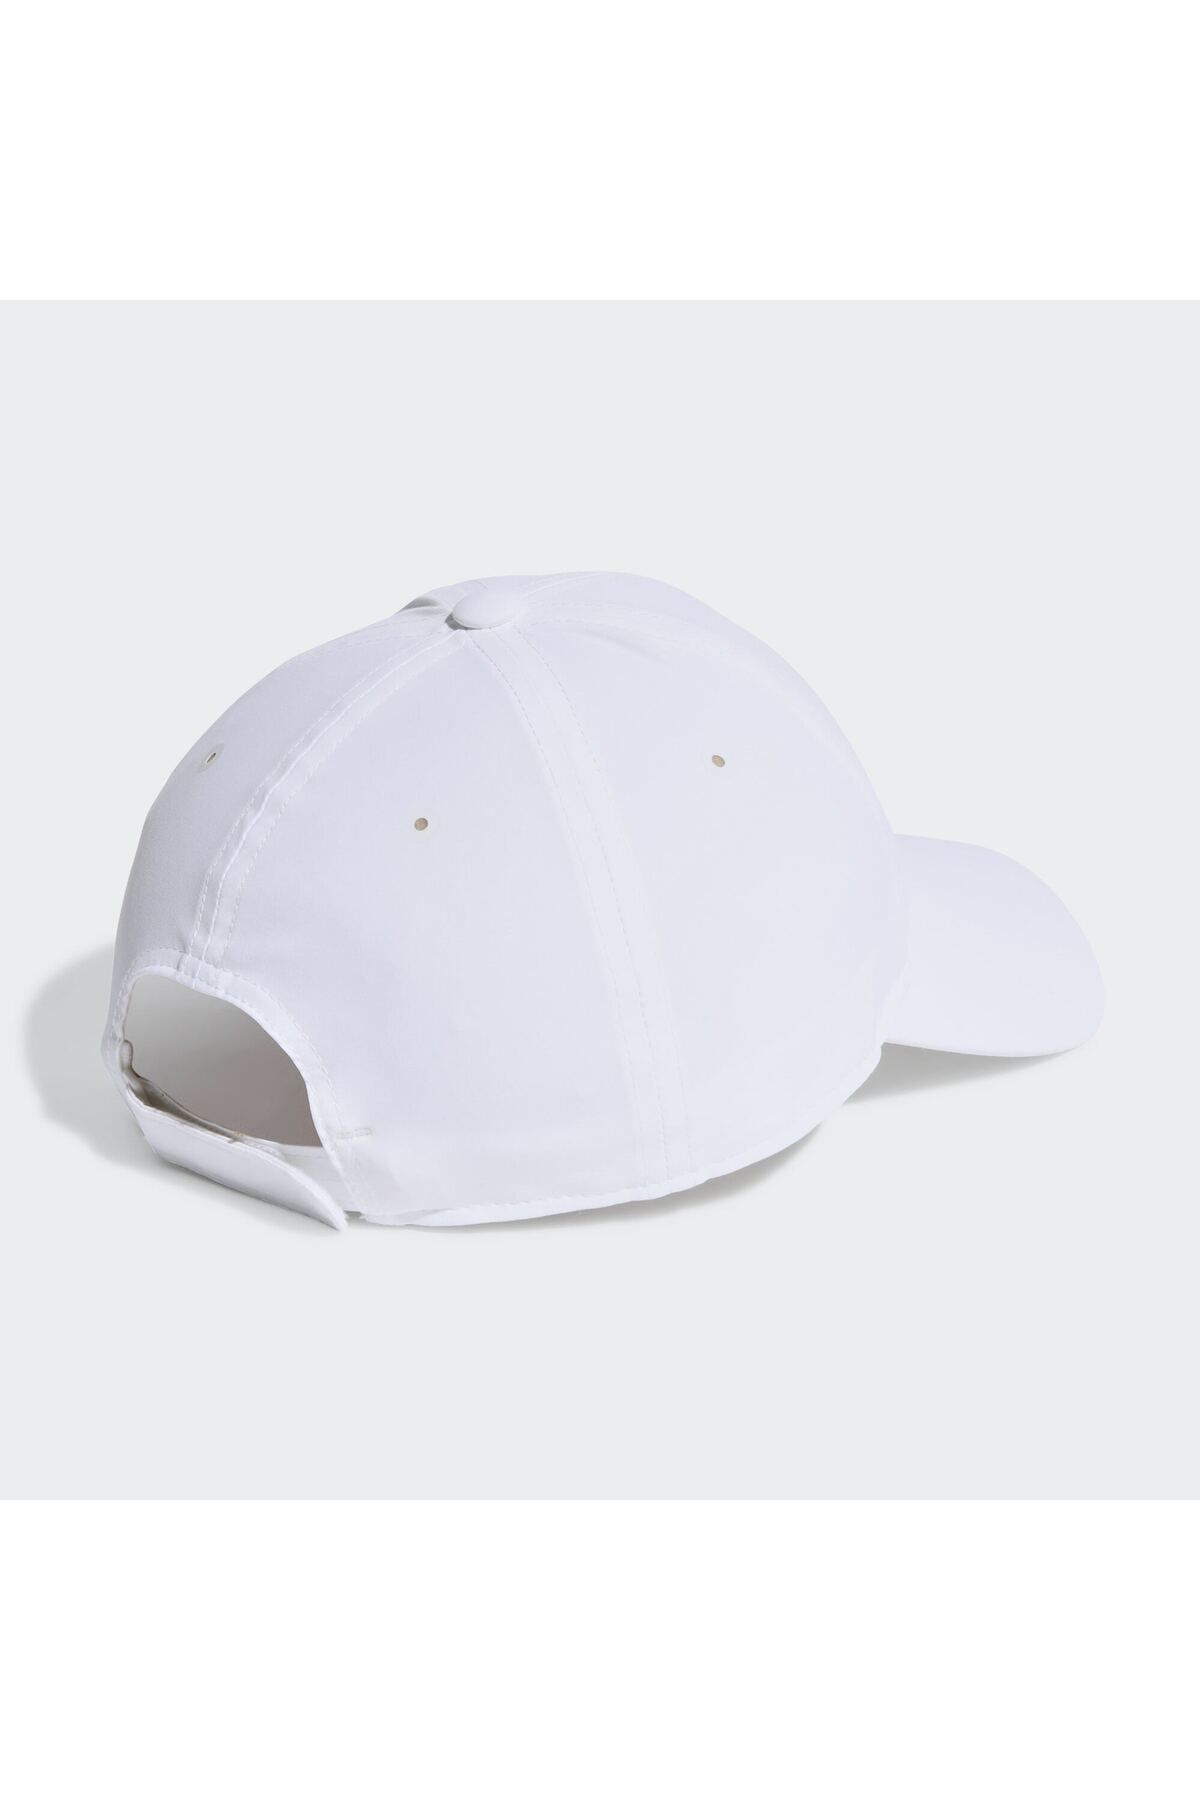 adidas کلاه بیس بال 3 نوری هوایی